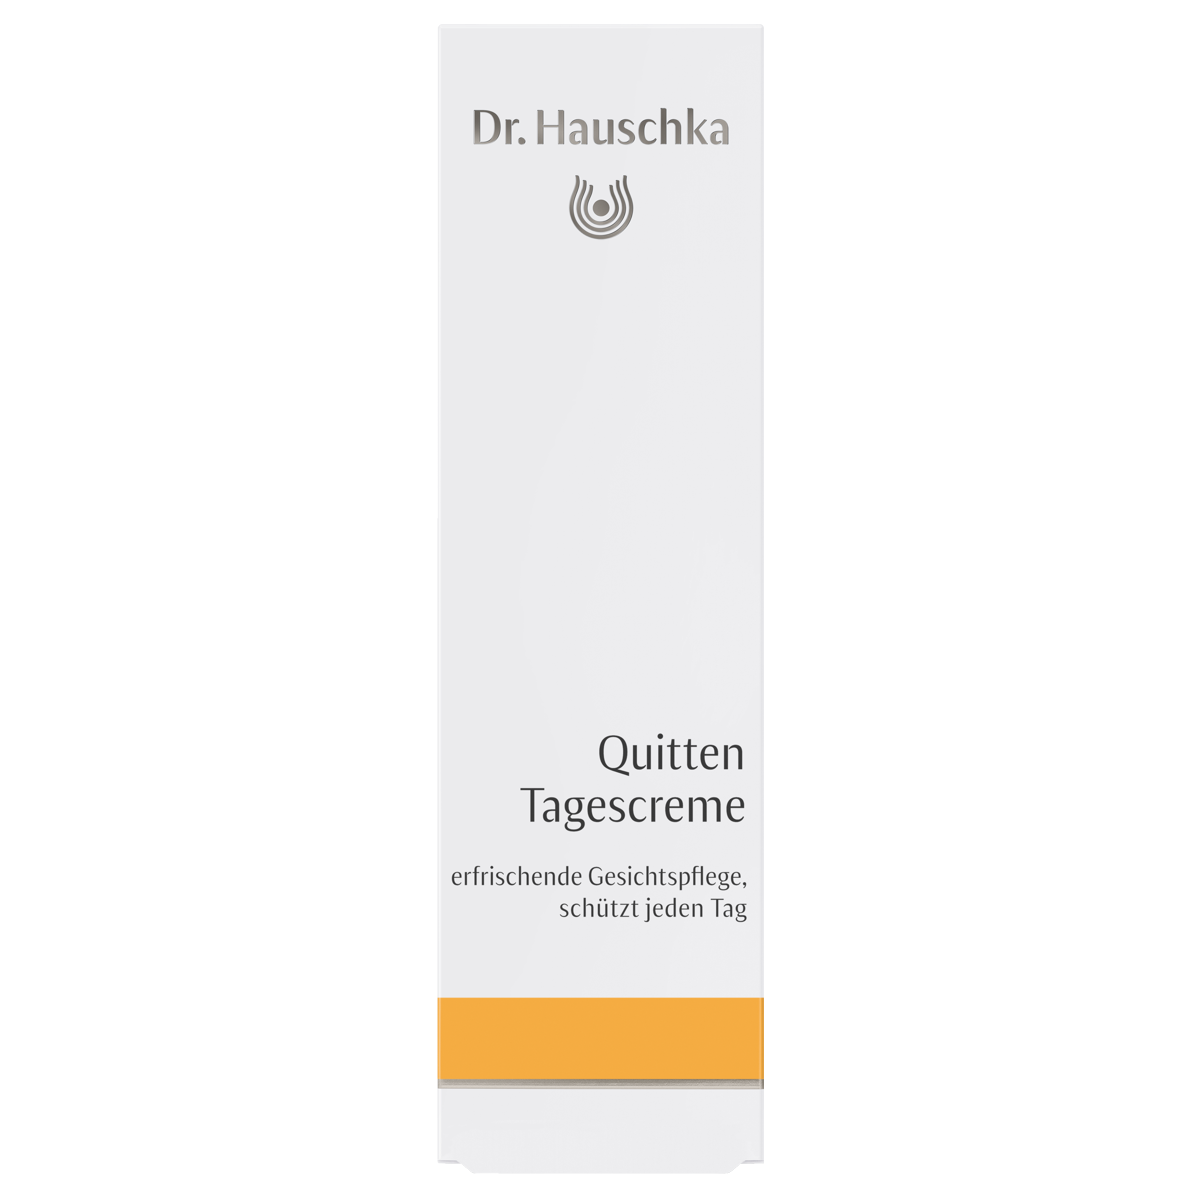 Dr_Hauschka_Quitten_Tagescreme_online_kaufen